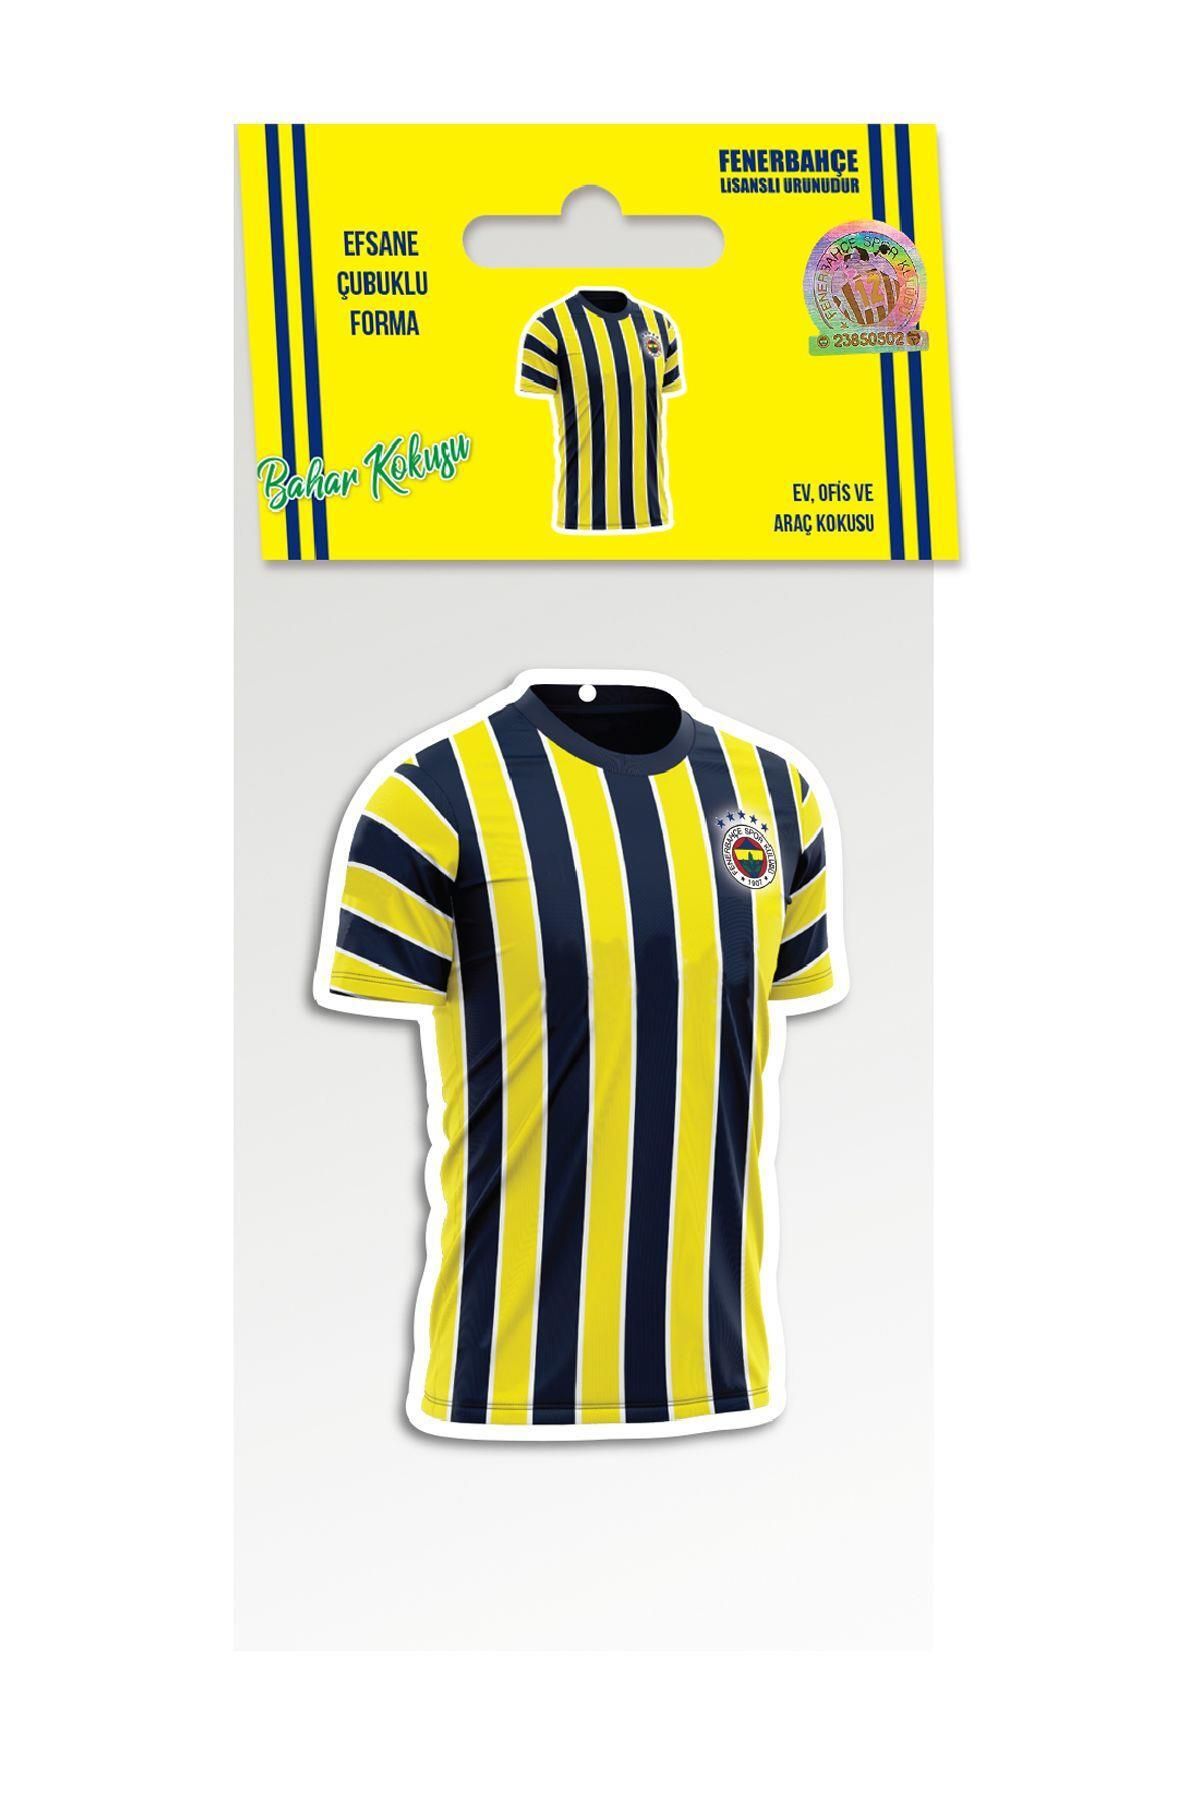 Fenerbahçe Lisaslı 5 Yıldızlı Taraftarlı Formalı - Armalı (LOGOLU) - 100 Yıl Logolu Asma Oto Koku